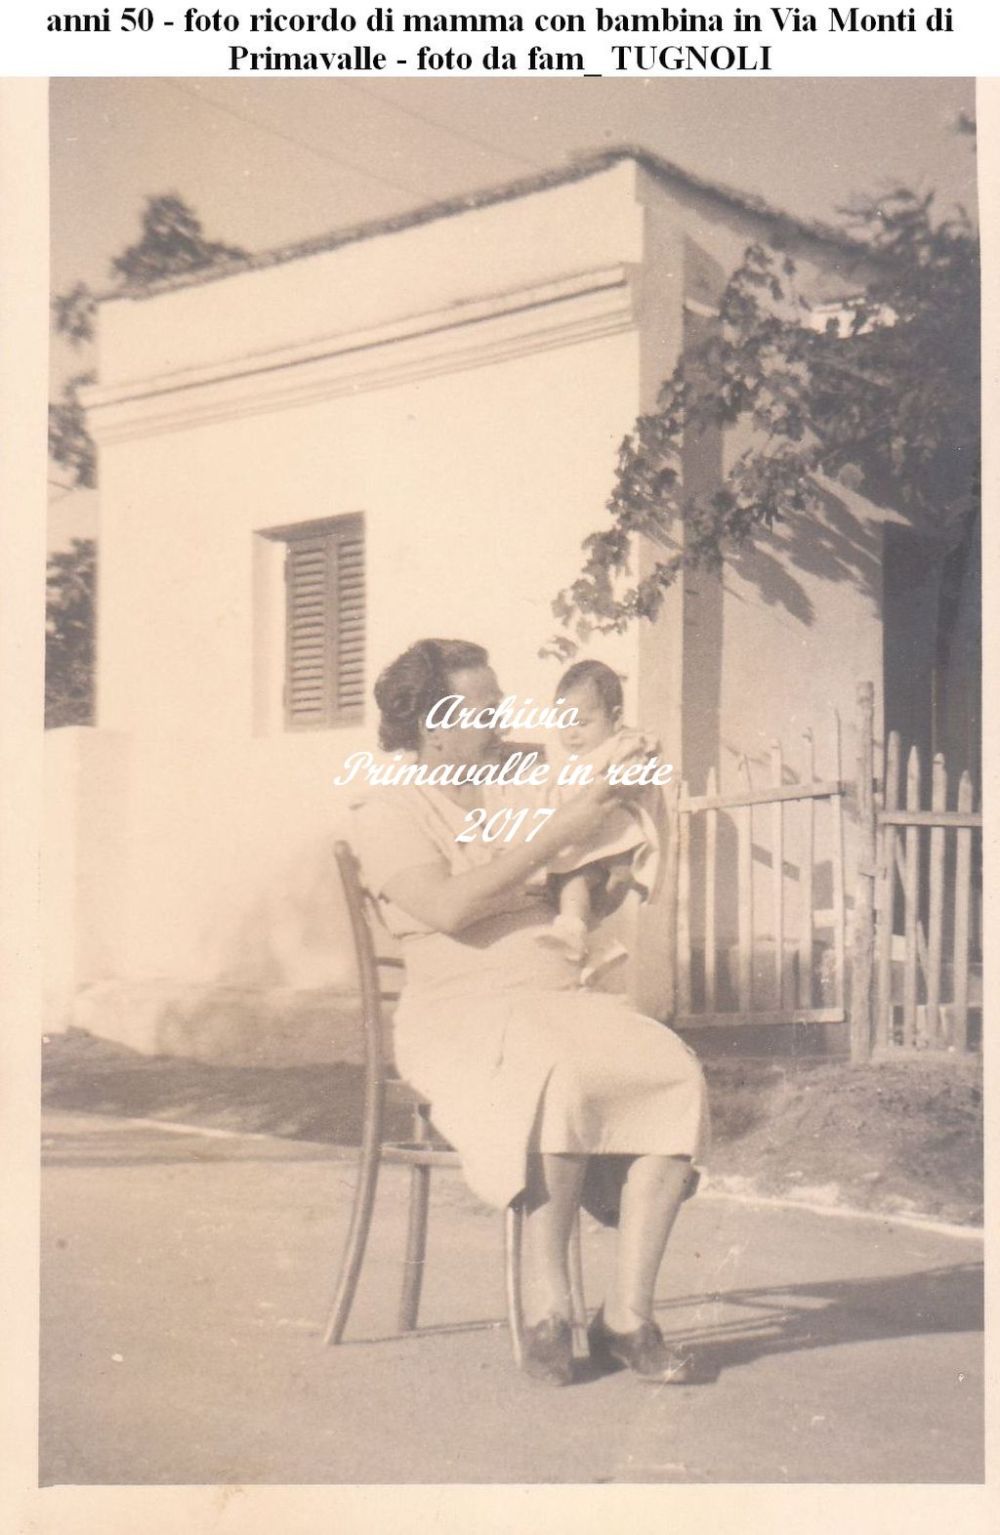 anni 50 - foto ricordo di mamma con bambina in Via Monti di Primavalle - foto da fam_ TUGNOLI